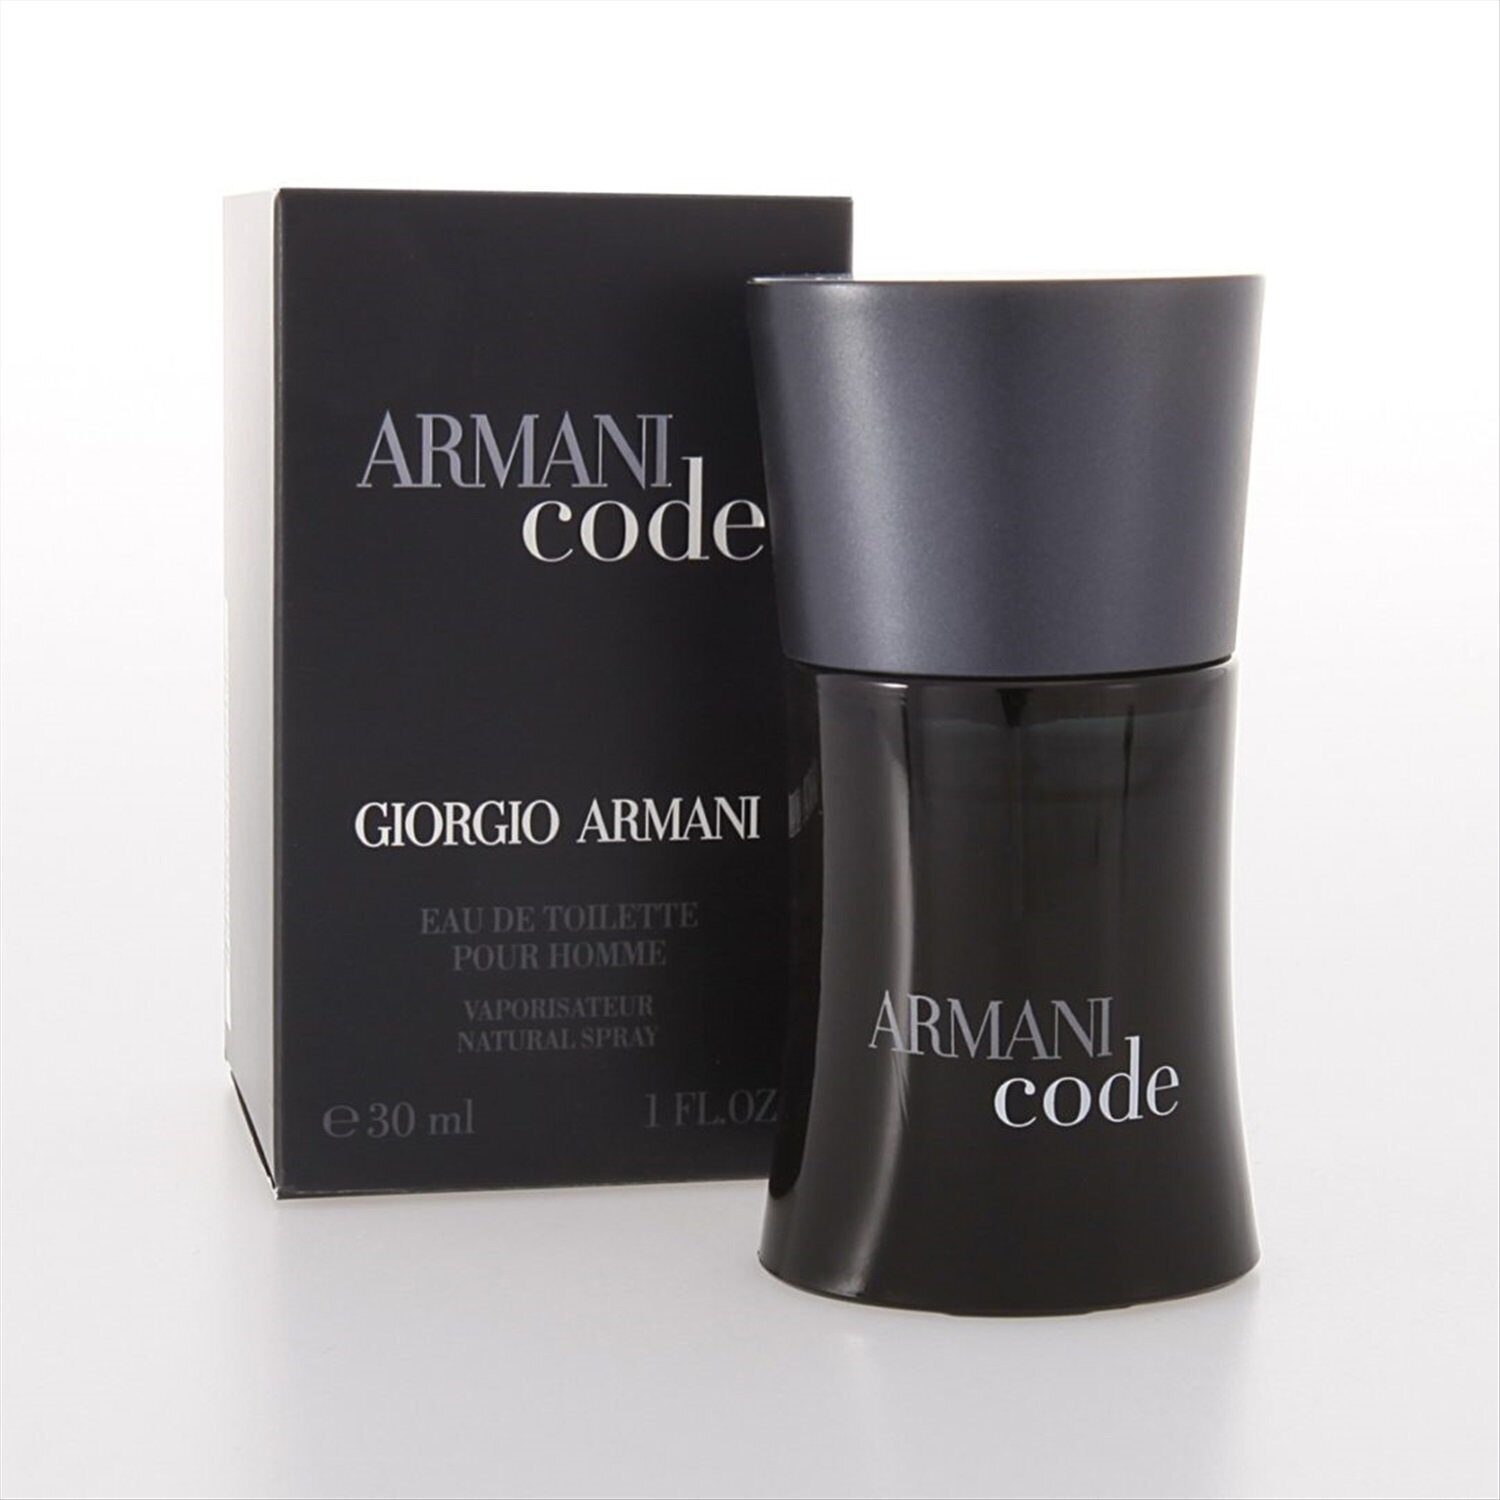 Hommes 30. Armani code (m) 30ml EDT. Armani Black code Giorgio Armani. Giorgio Armani туалетная вода Armani code homme. Giorgio Armani Armani code Eau de Toilette.